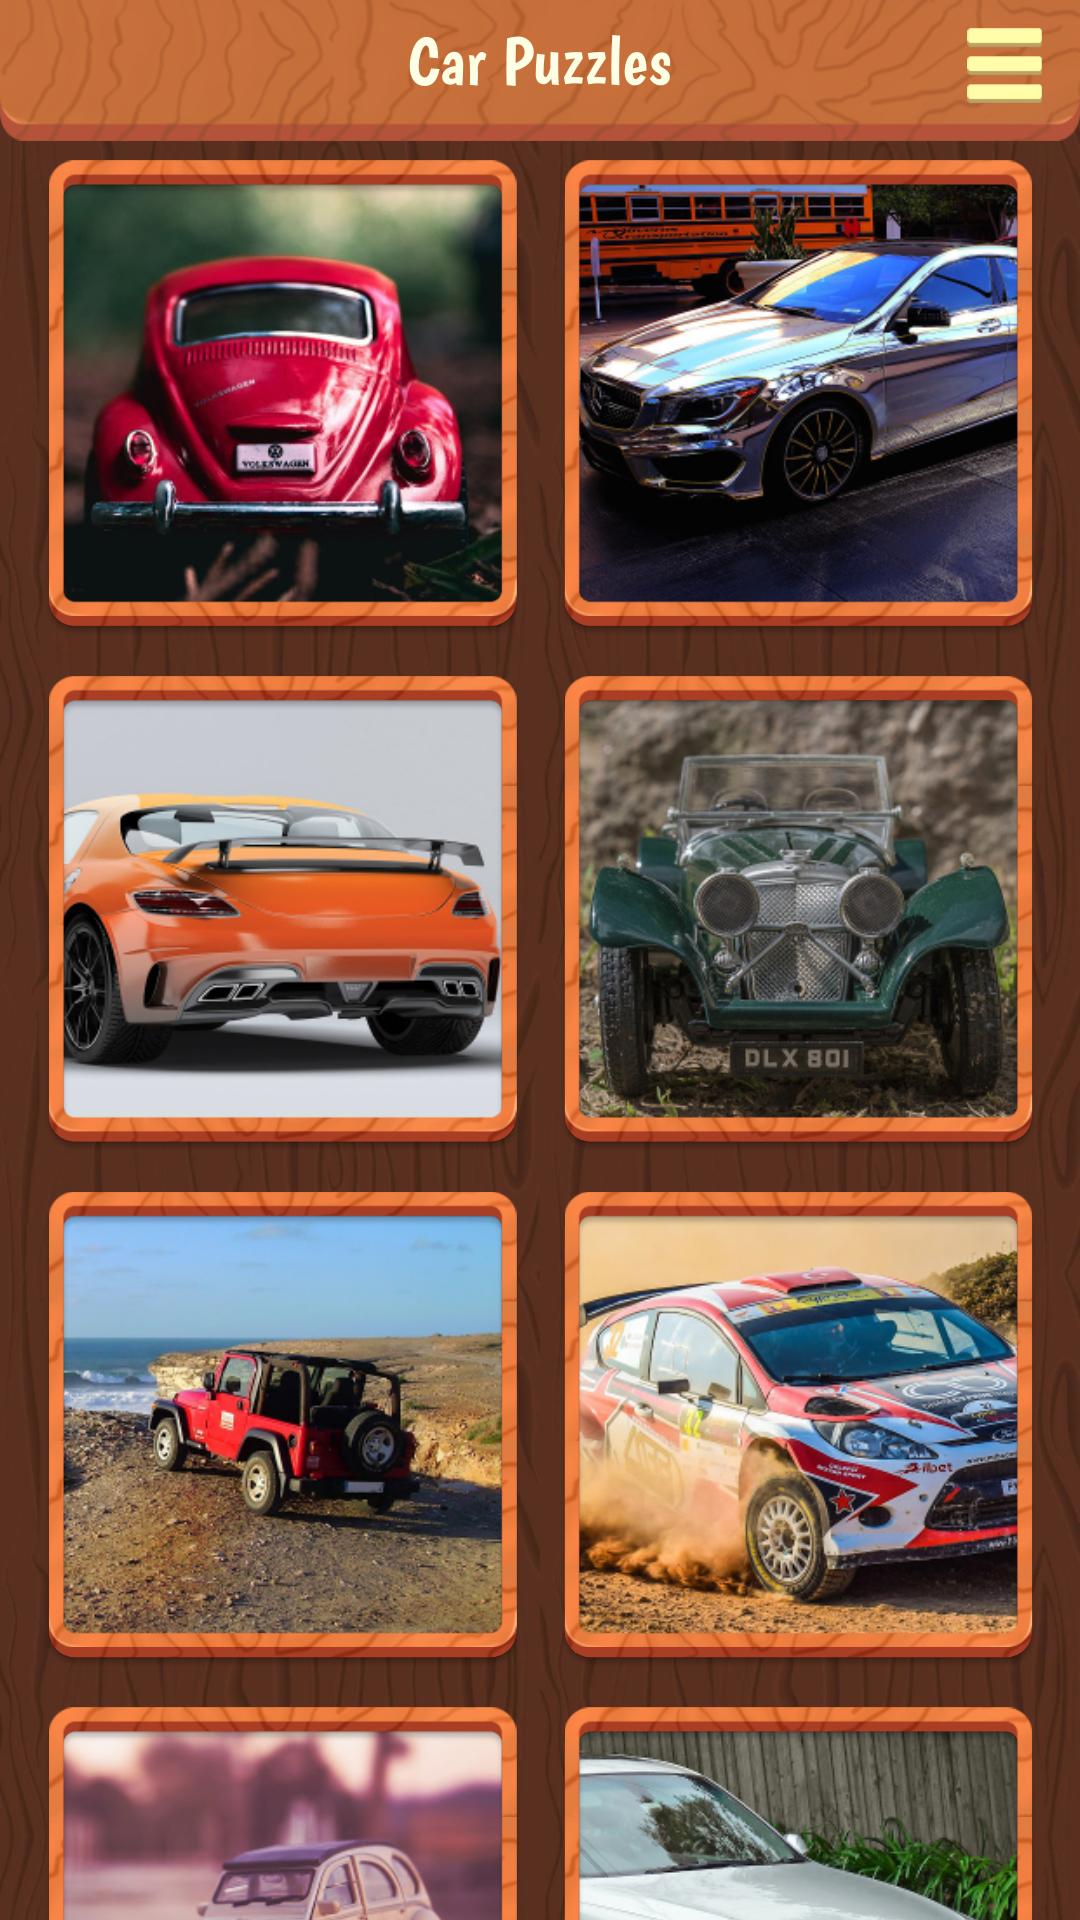 Juegos Rompecabezas de carros for Android - APK Download